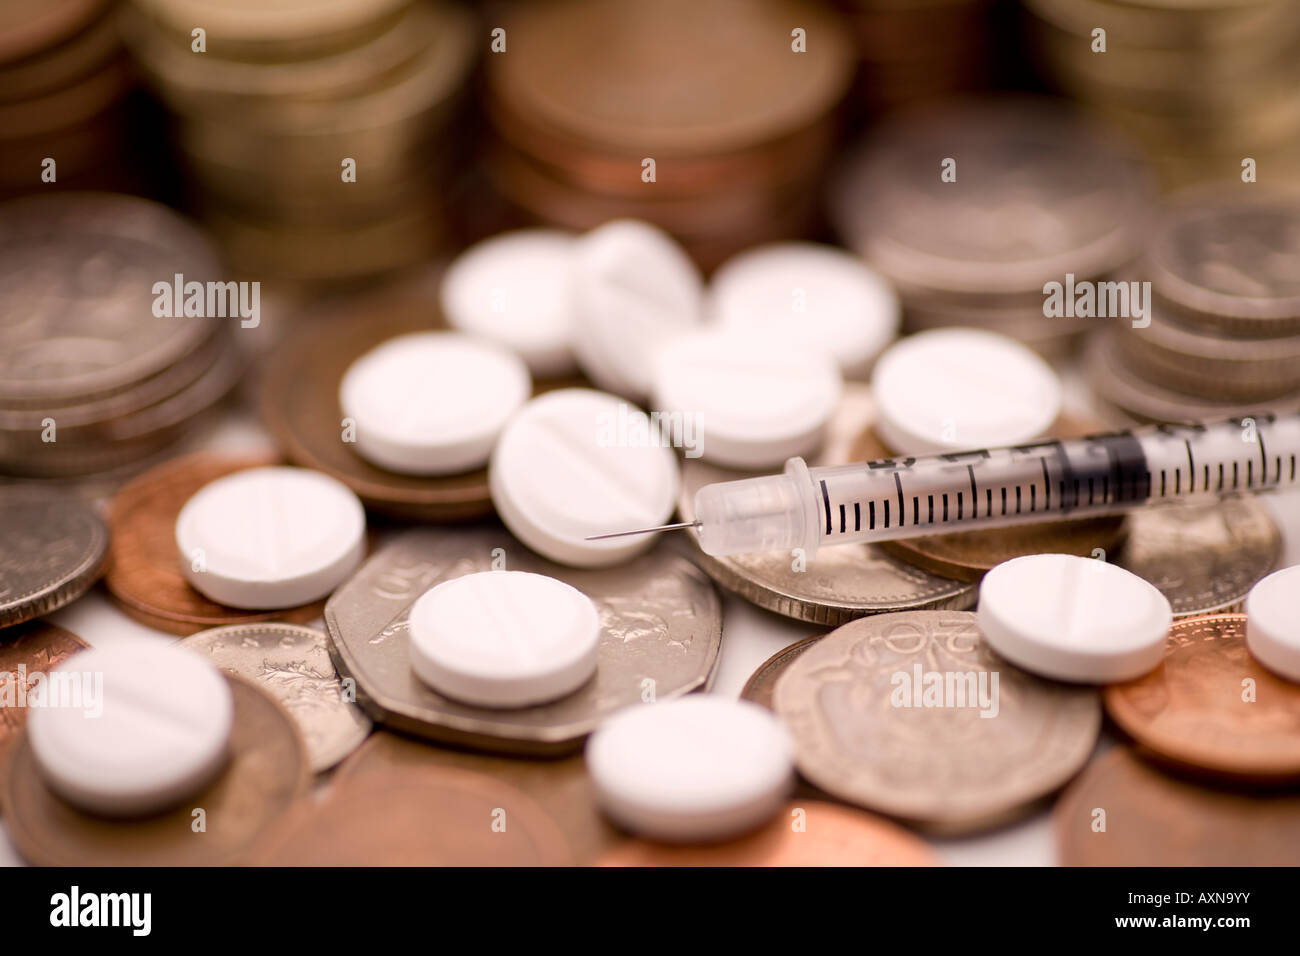 Servizio sanitario nazionale nhs spese sanitarie cariche di prescrizione di denaro contante di droga e una siringa Foto Stock